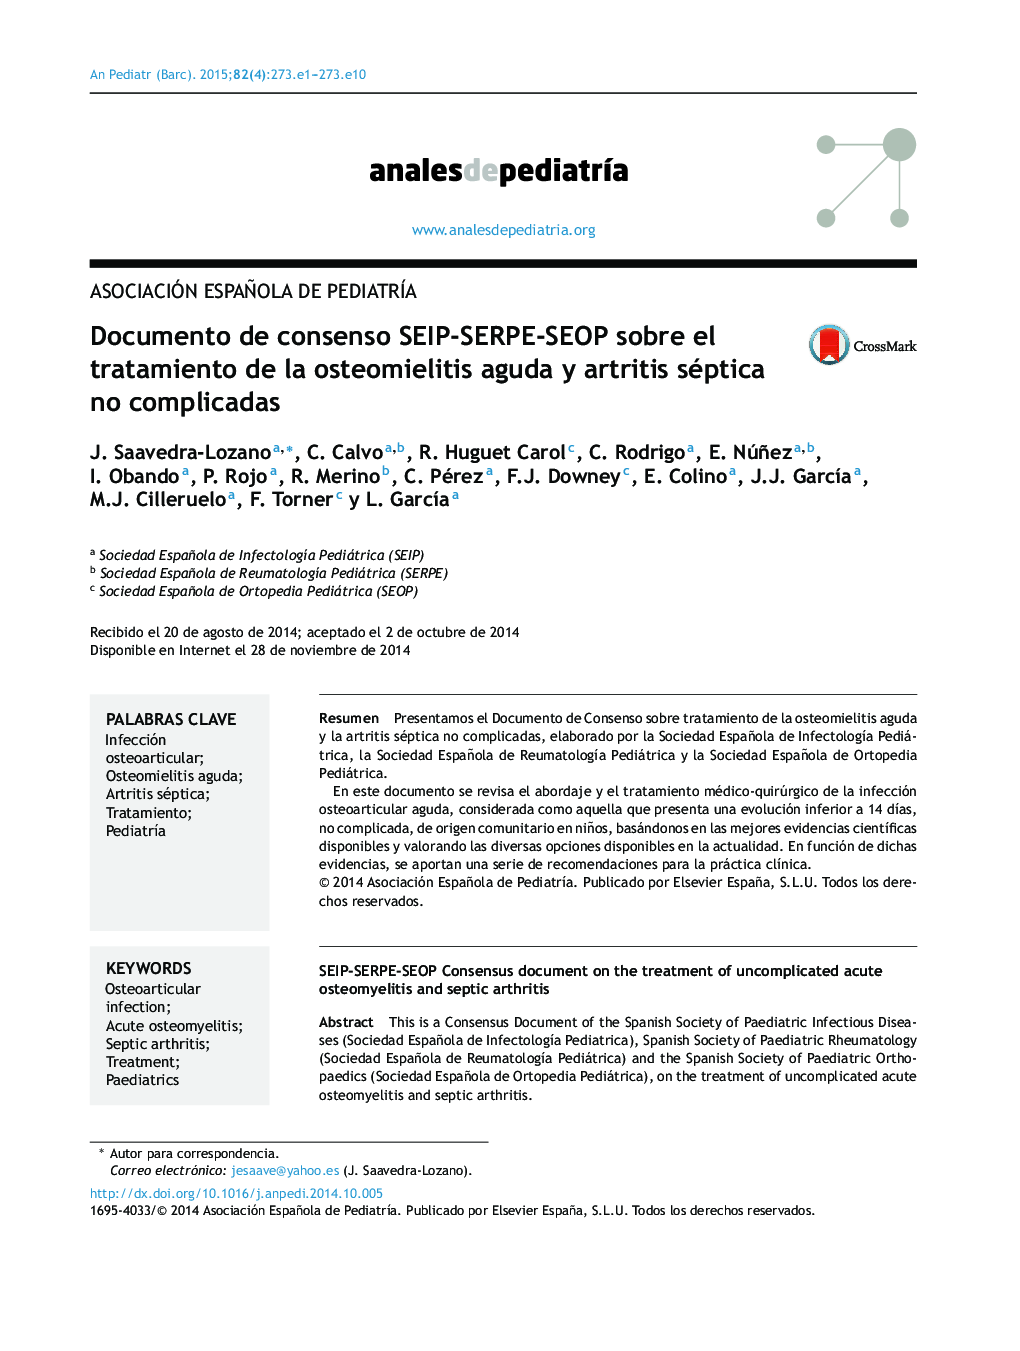 Documento de consenso SEIP-SERPE-SEOP sobre el tratamiento de la osteomielitis aguda y artritis séptica no complicadas